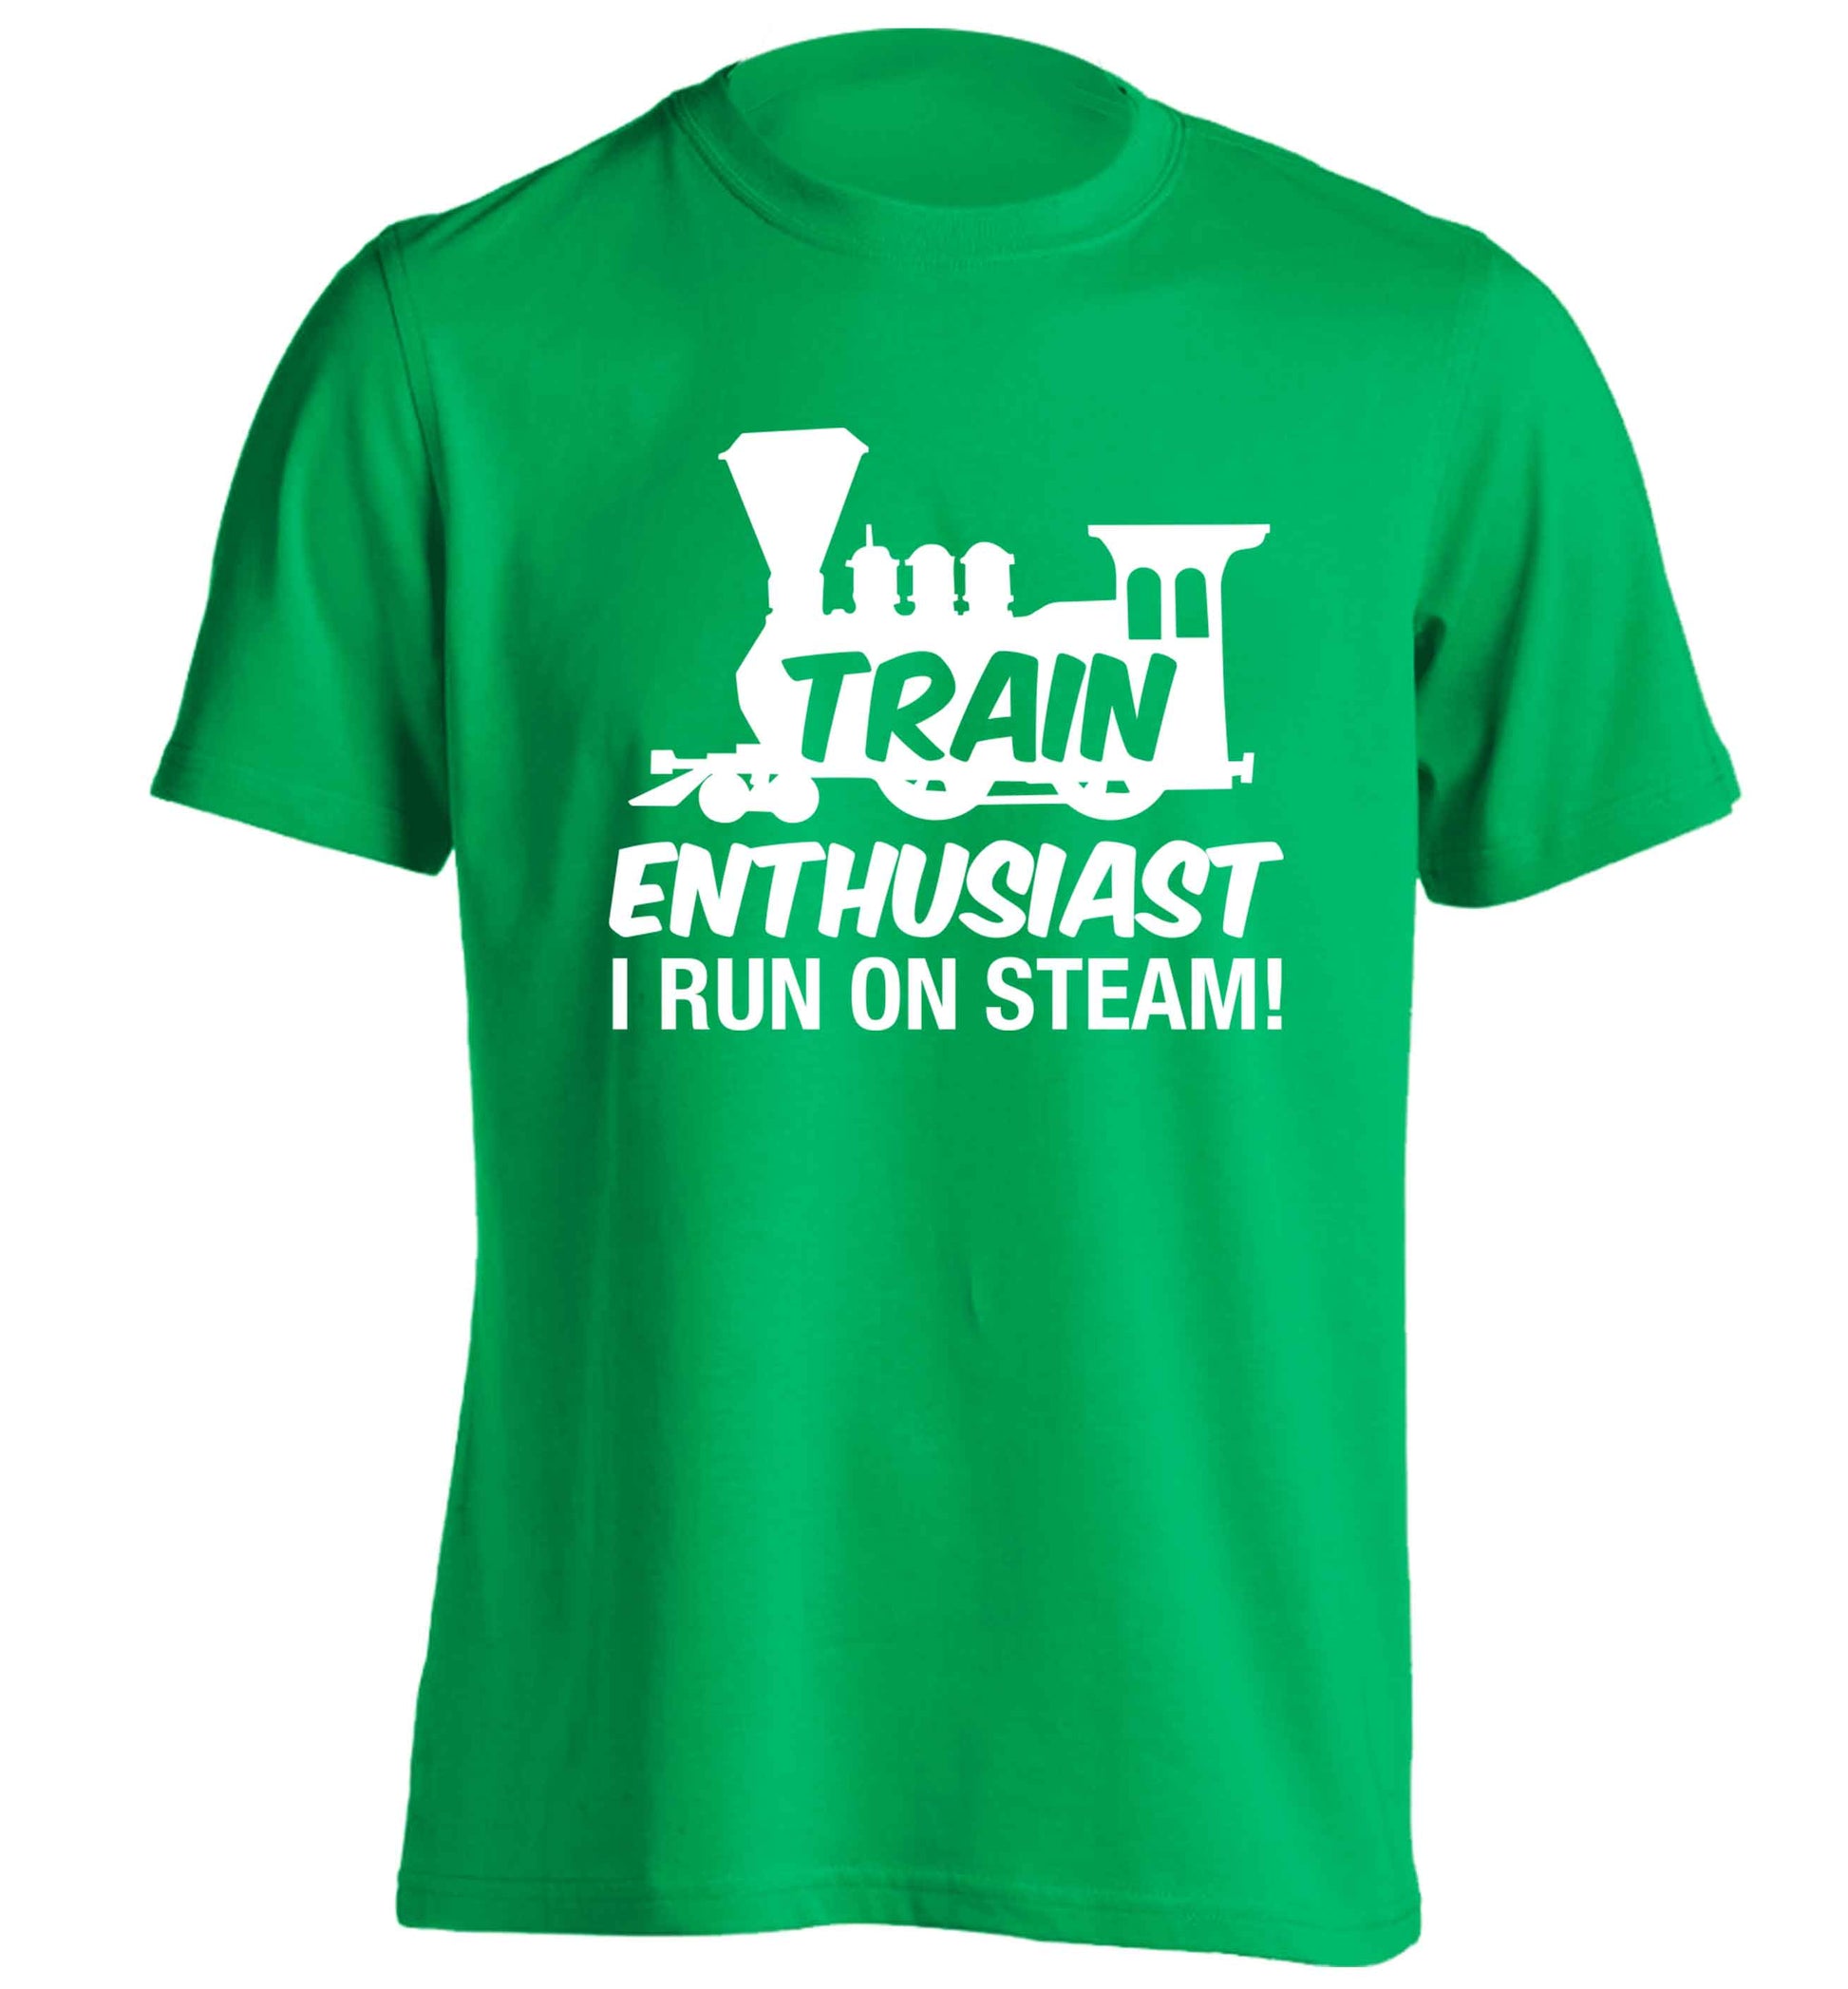 Train enthusiast I run on steam adults unisex green Tshirt 2XL